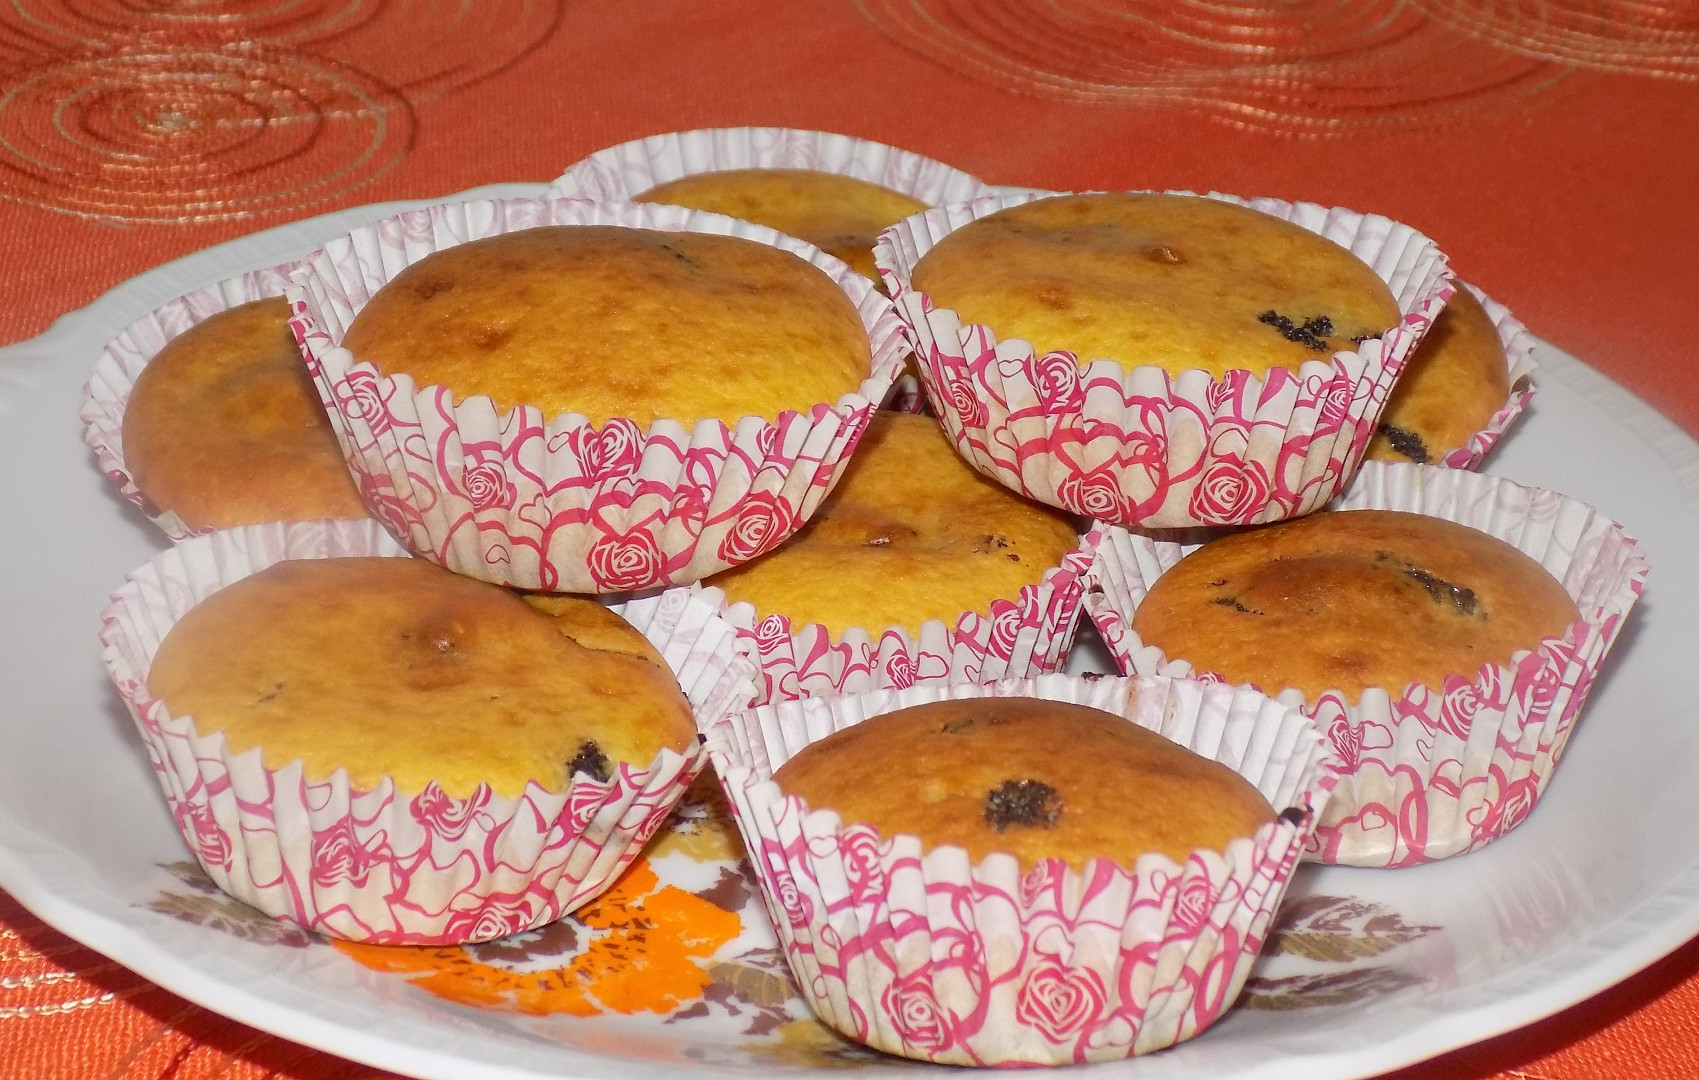 Muffiny s makovou náplní